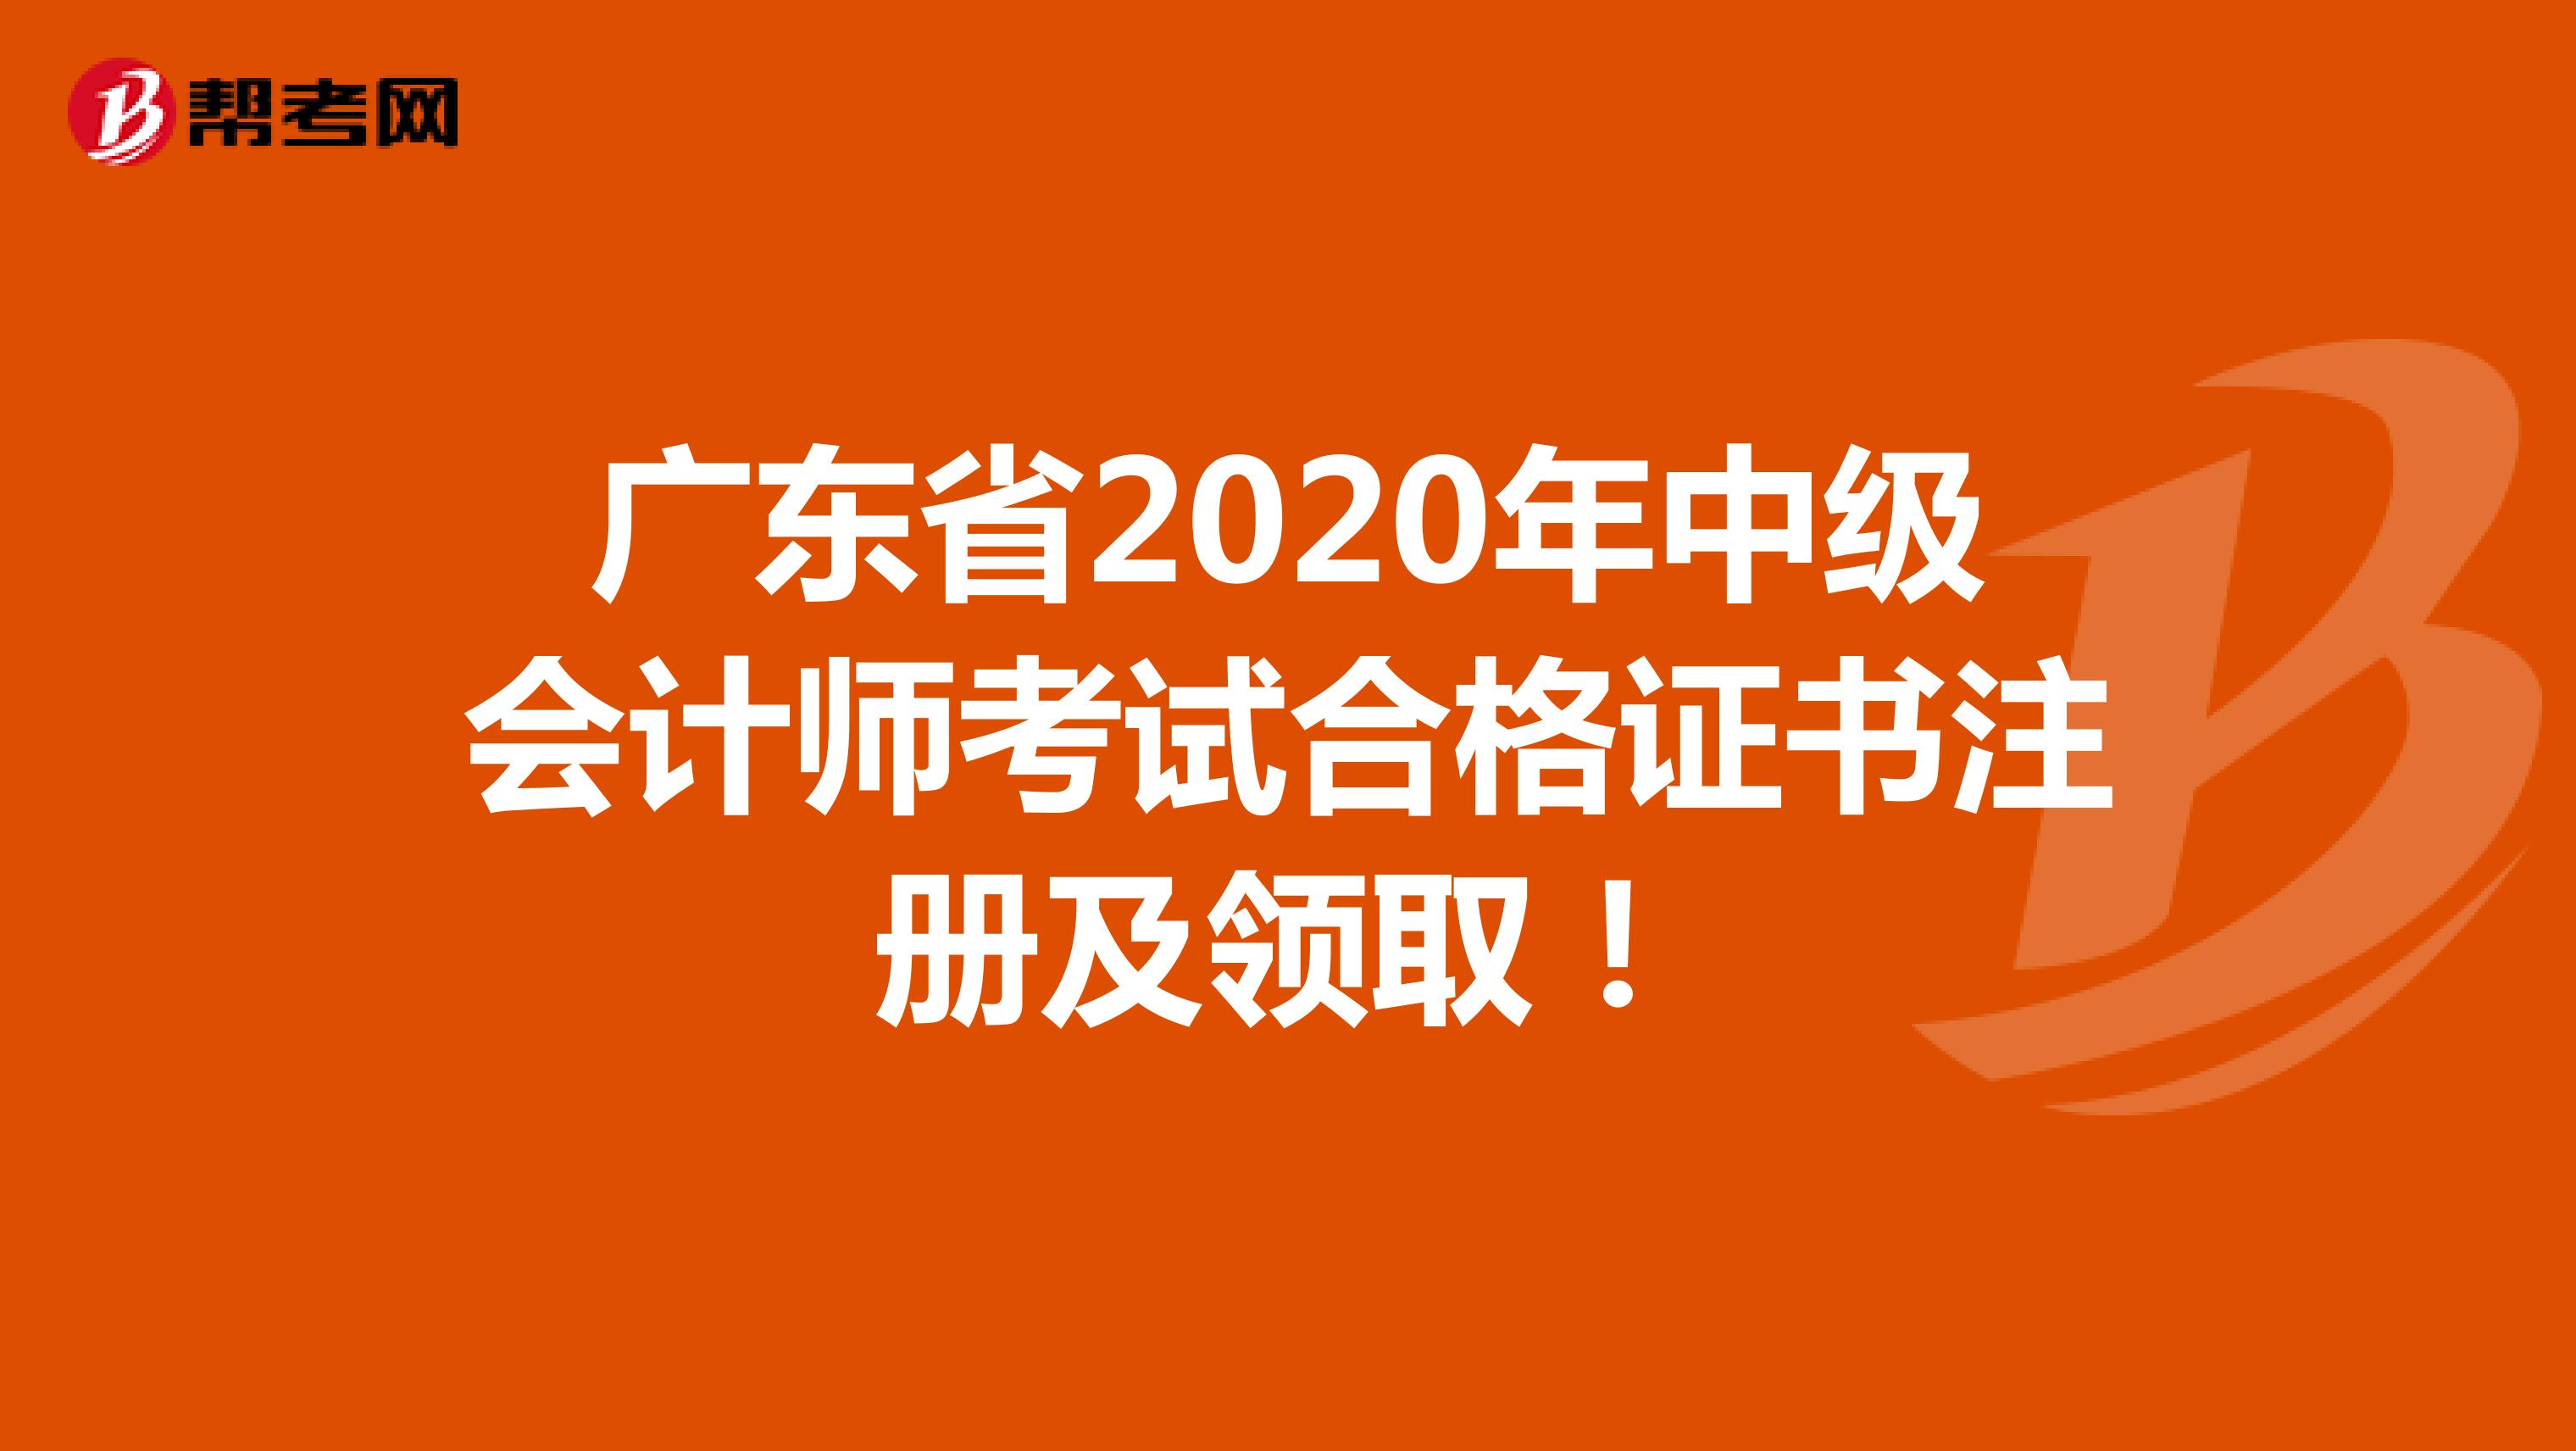 广东省2020年中级会计师考试合格证书注册及领取！